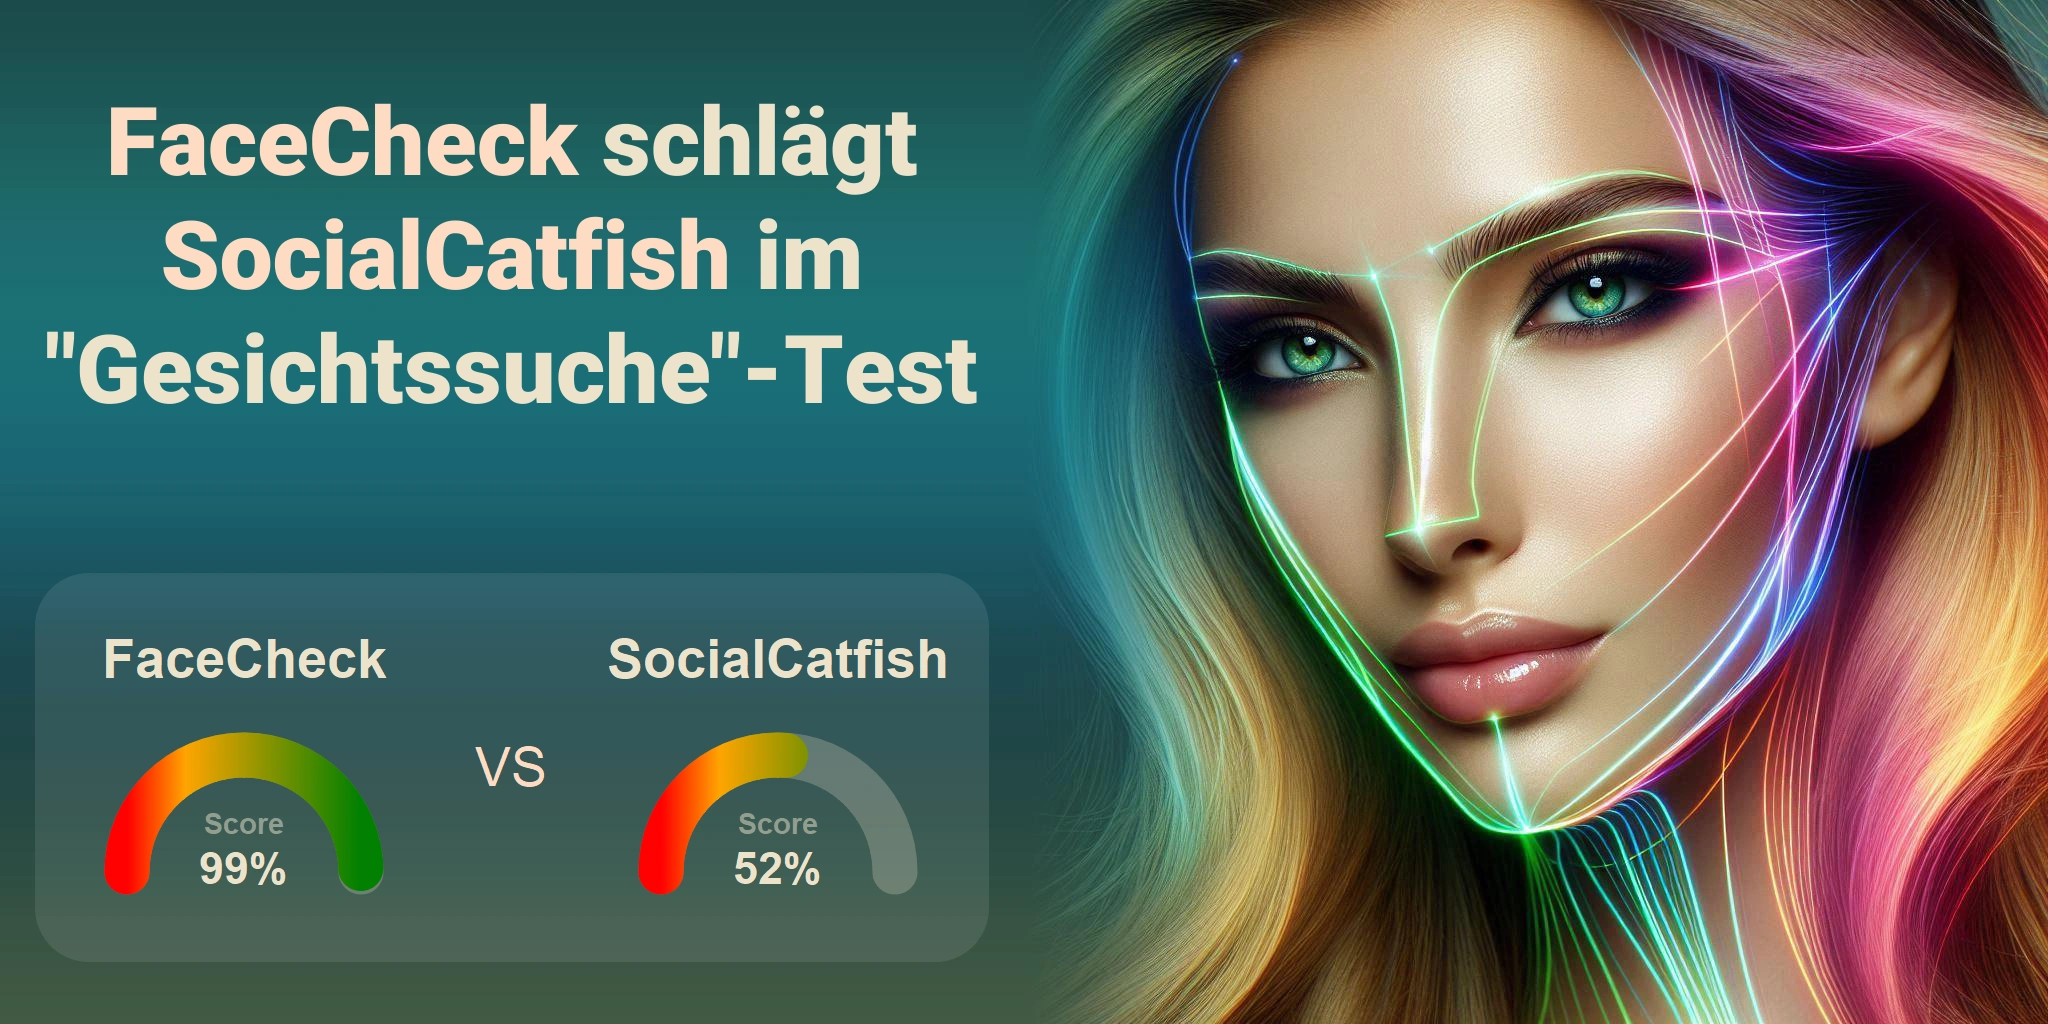 Welcher ist besser für die Gesichtssuche: <br>FaceCheck oder SocialCatfish?